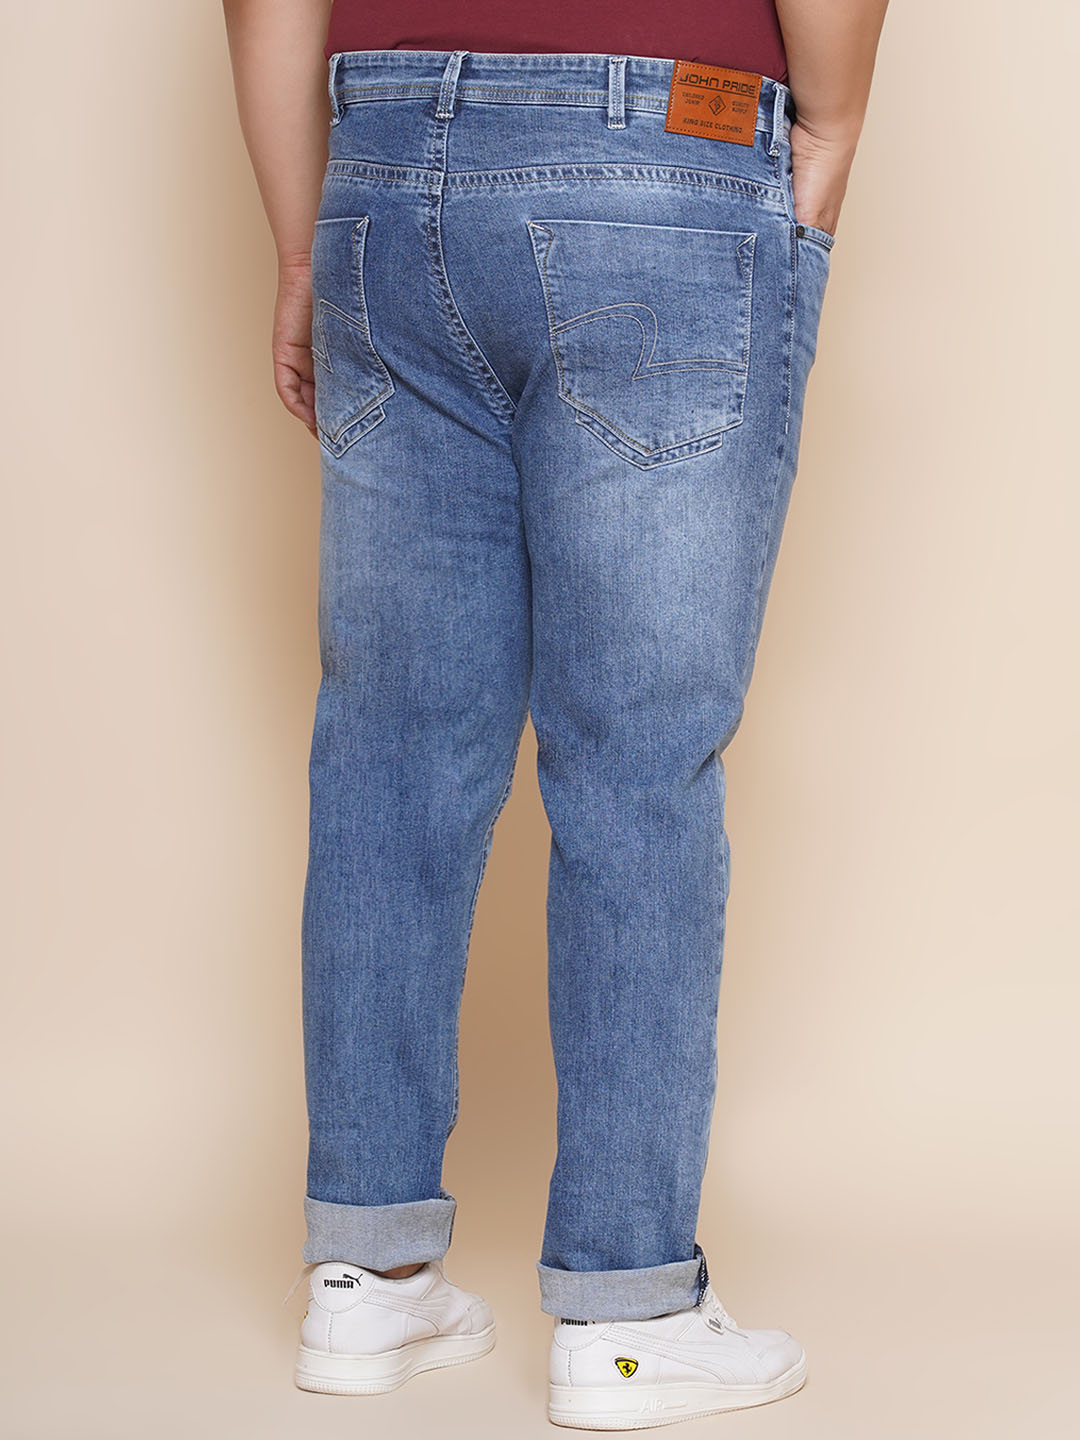 bottomwear/jeans/JPJ27033/jpj27033-5.jpg